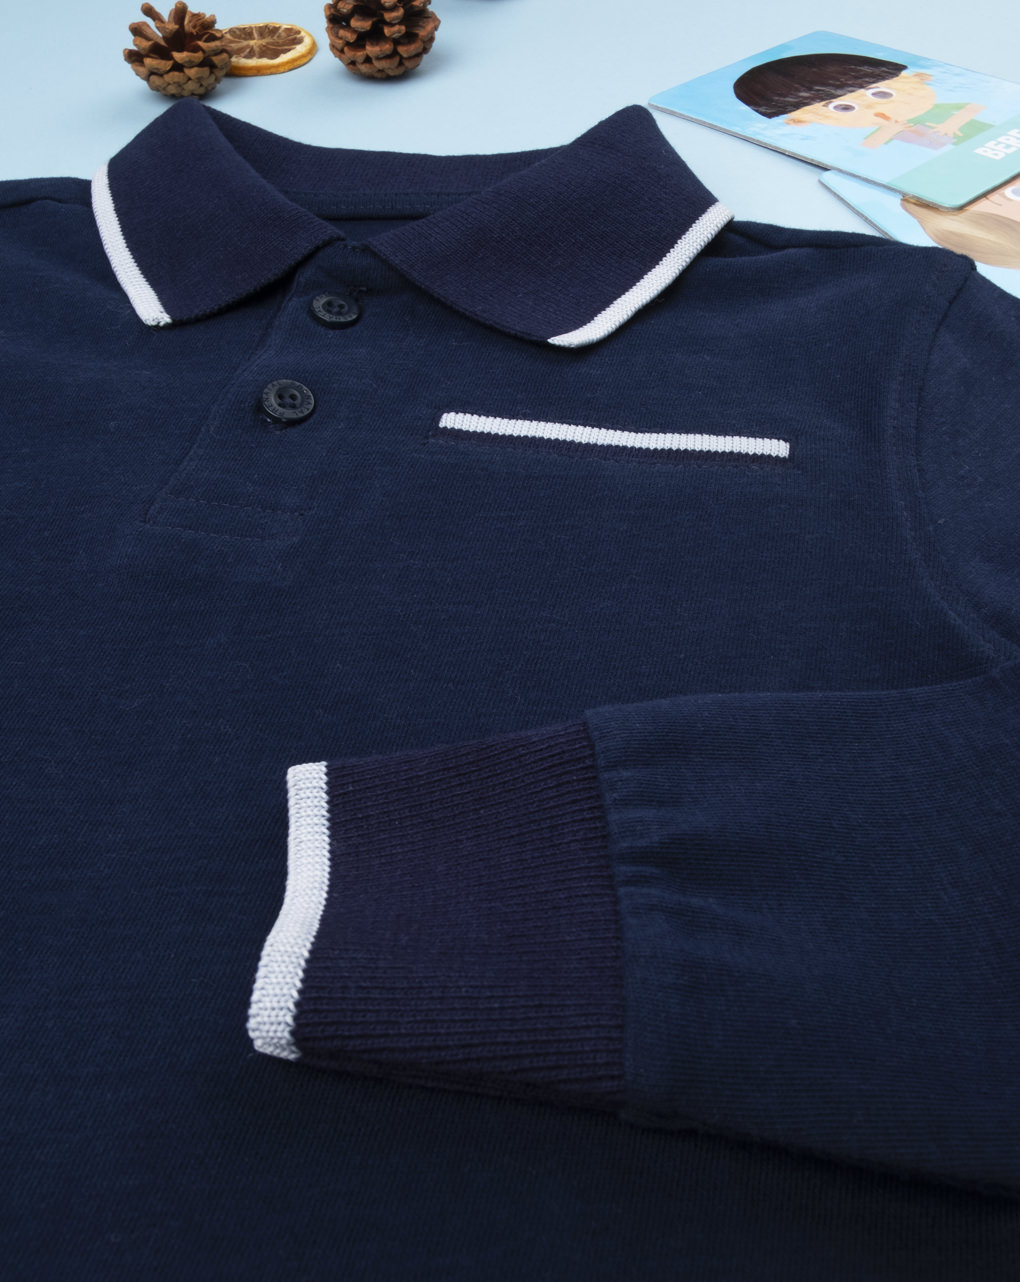 μπλούζα πόλο μακρυμάνικη σκούρο μπλε 8-9/9-10 ετών για αγόρι - Prénatal